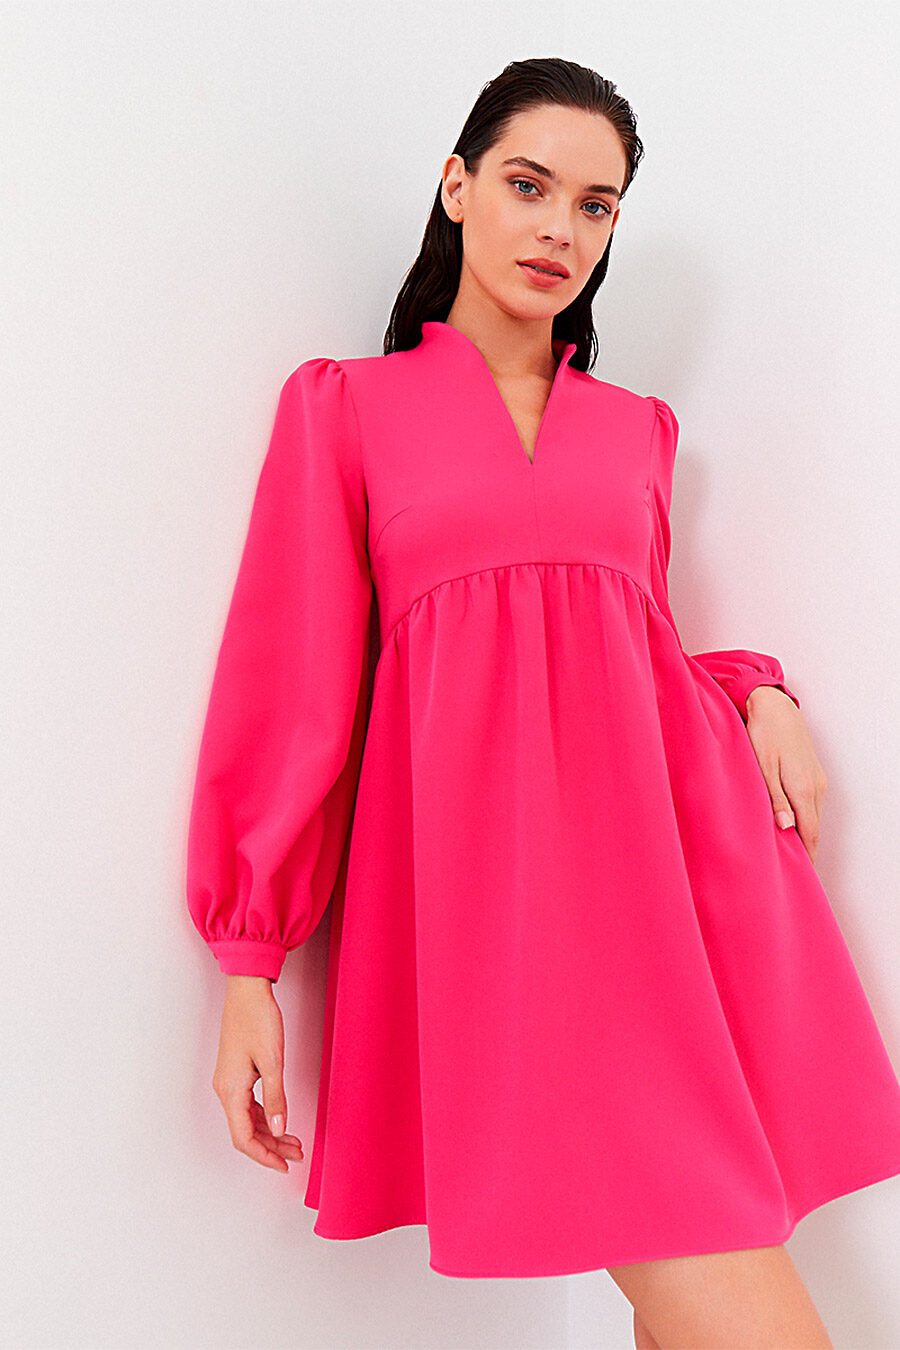 Платье для женщин VITTORIA VICCI 807681 купить оптом от производителя. Совместная покупка женской одежды в OptMoyo